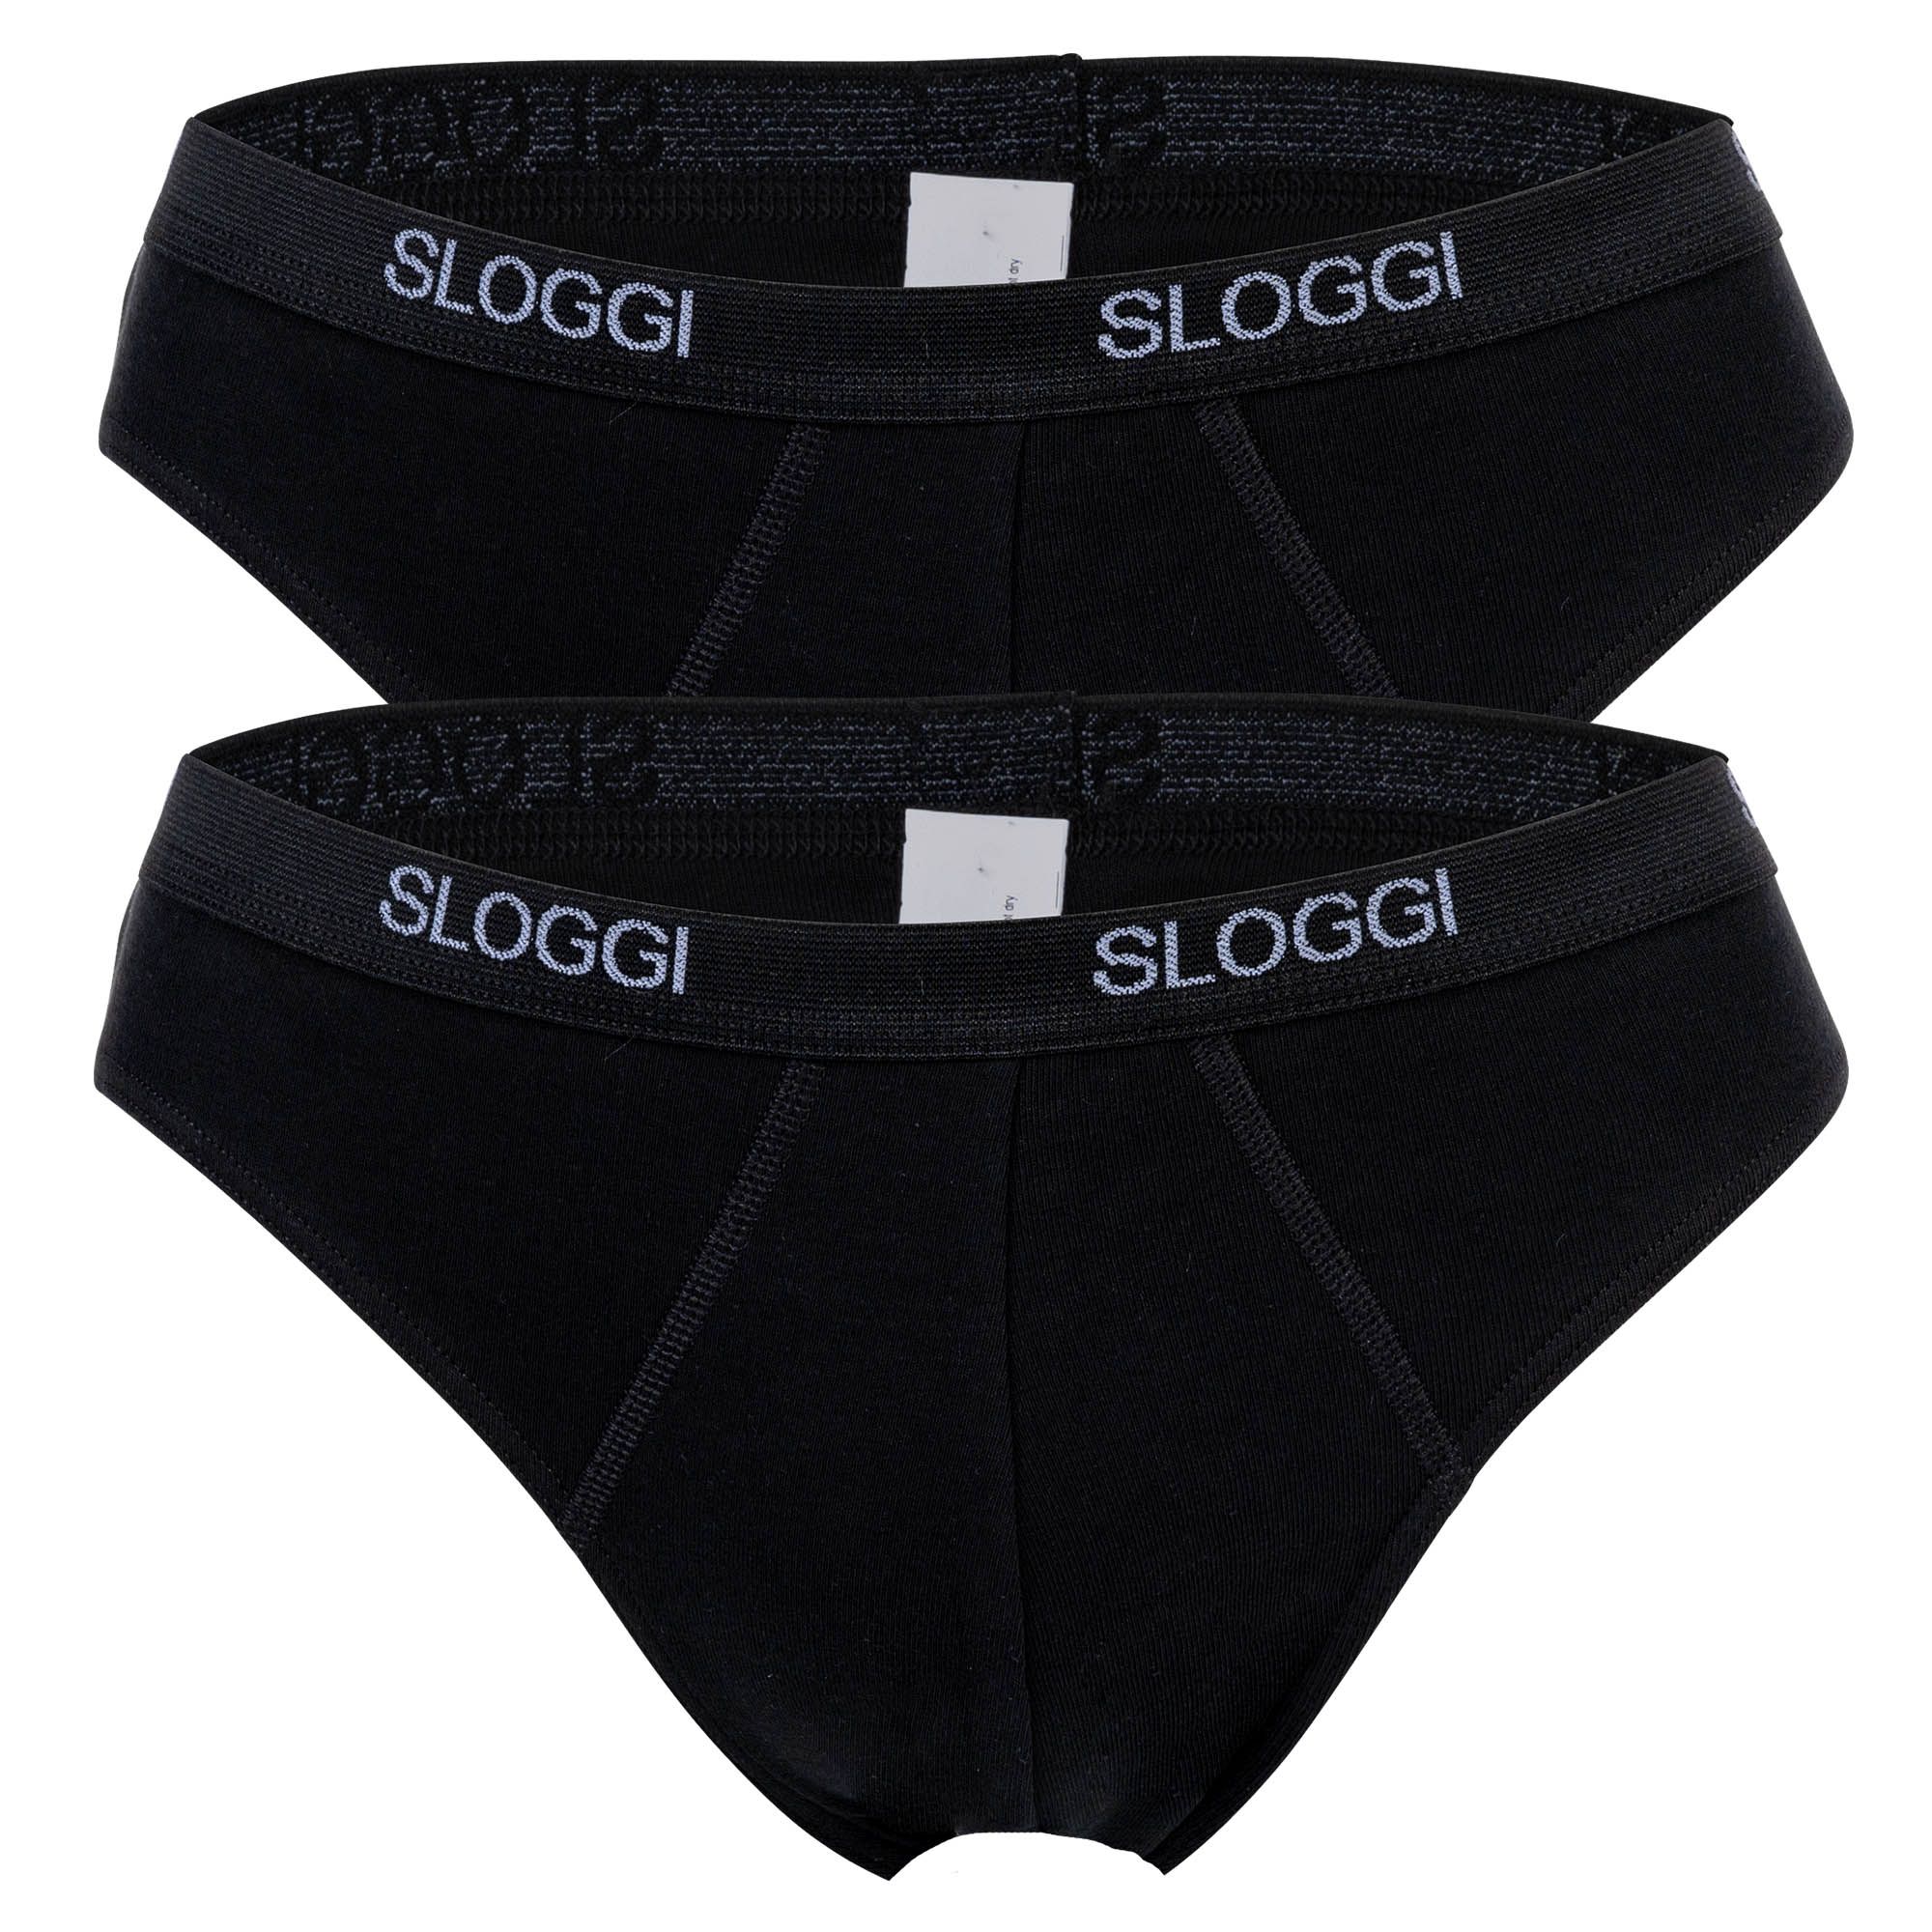 Sloggi Slips Pour Hommes, Paquet De 2 - Basic Mini, Sous-Vêtements, Caleçon, Coton, Logo, Uni Gris Xl (X-Large)